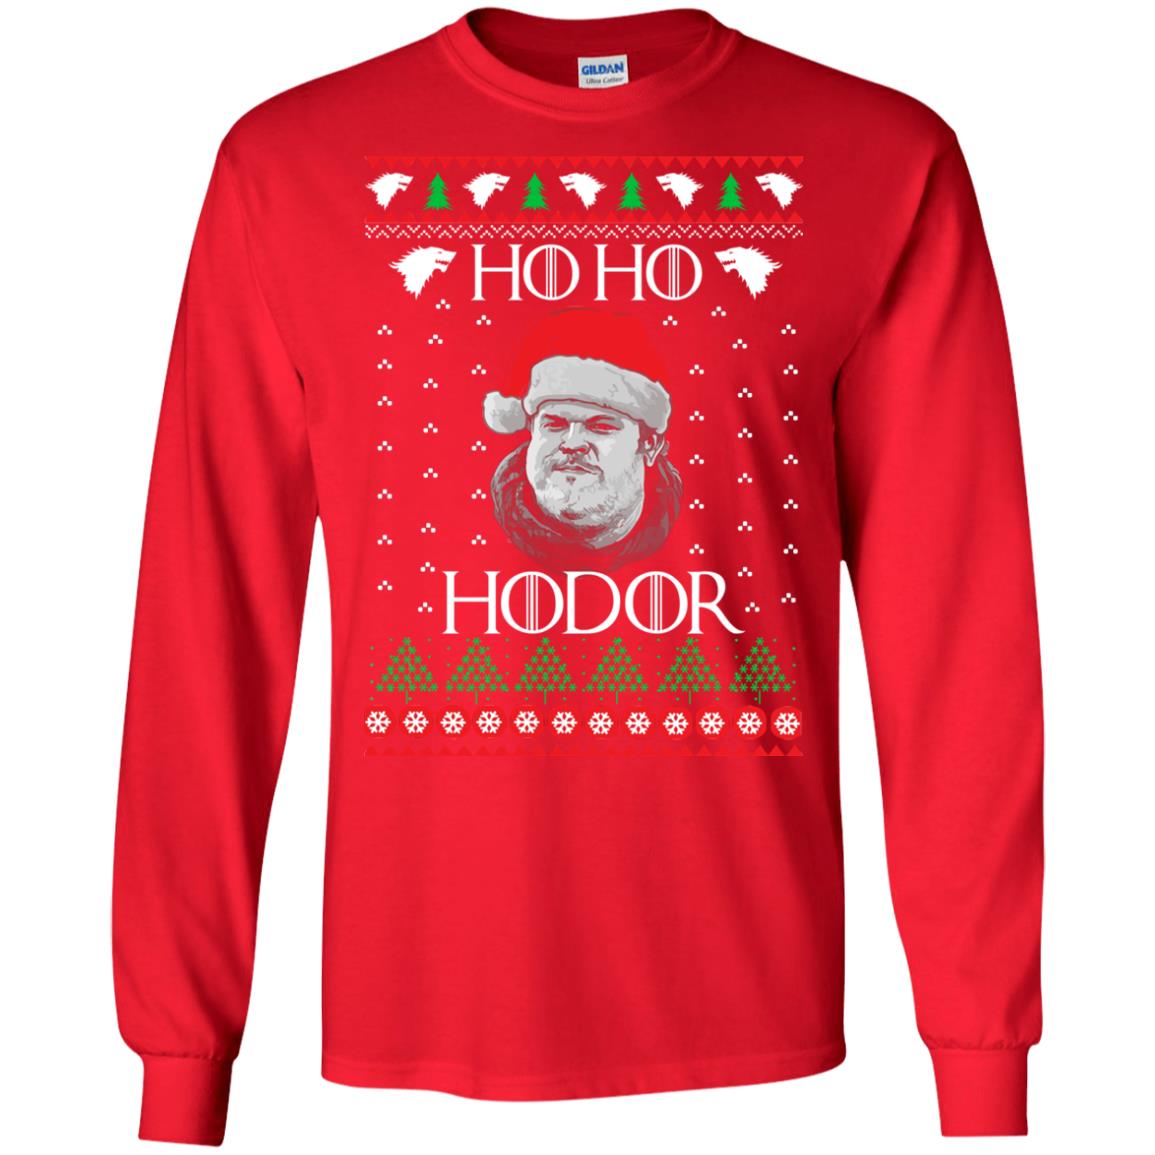 HO HO HO Hodor Game of Thrones New Ugly Christmas Sweater Unisex Sweatshirt